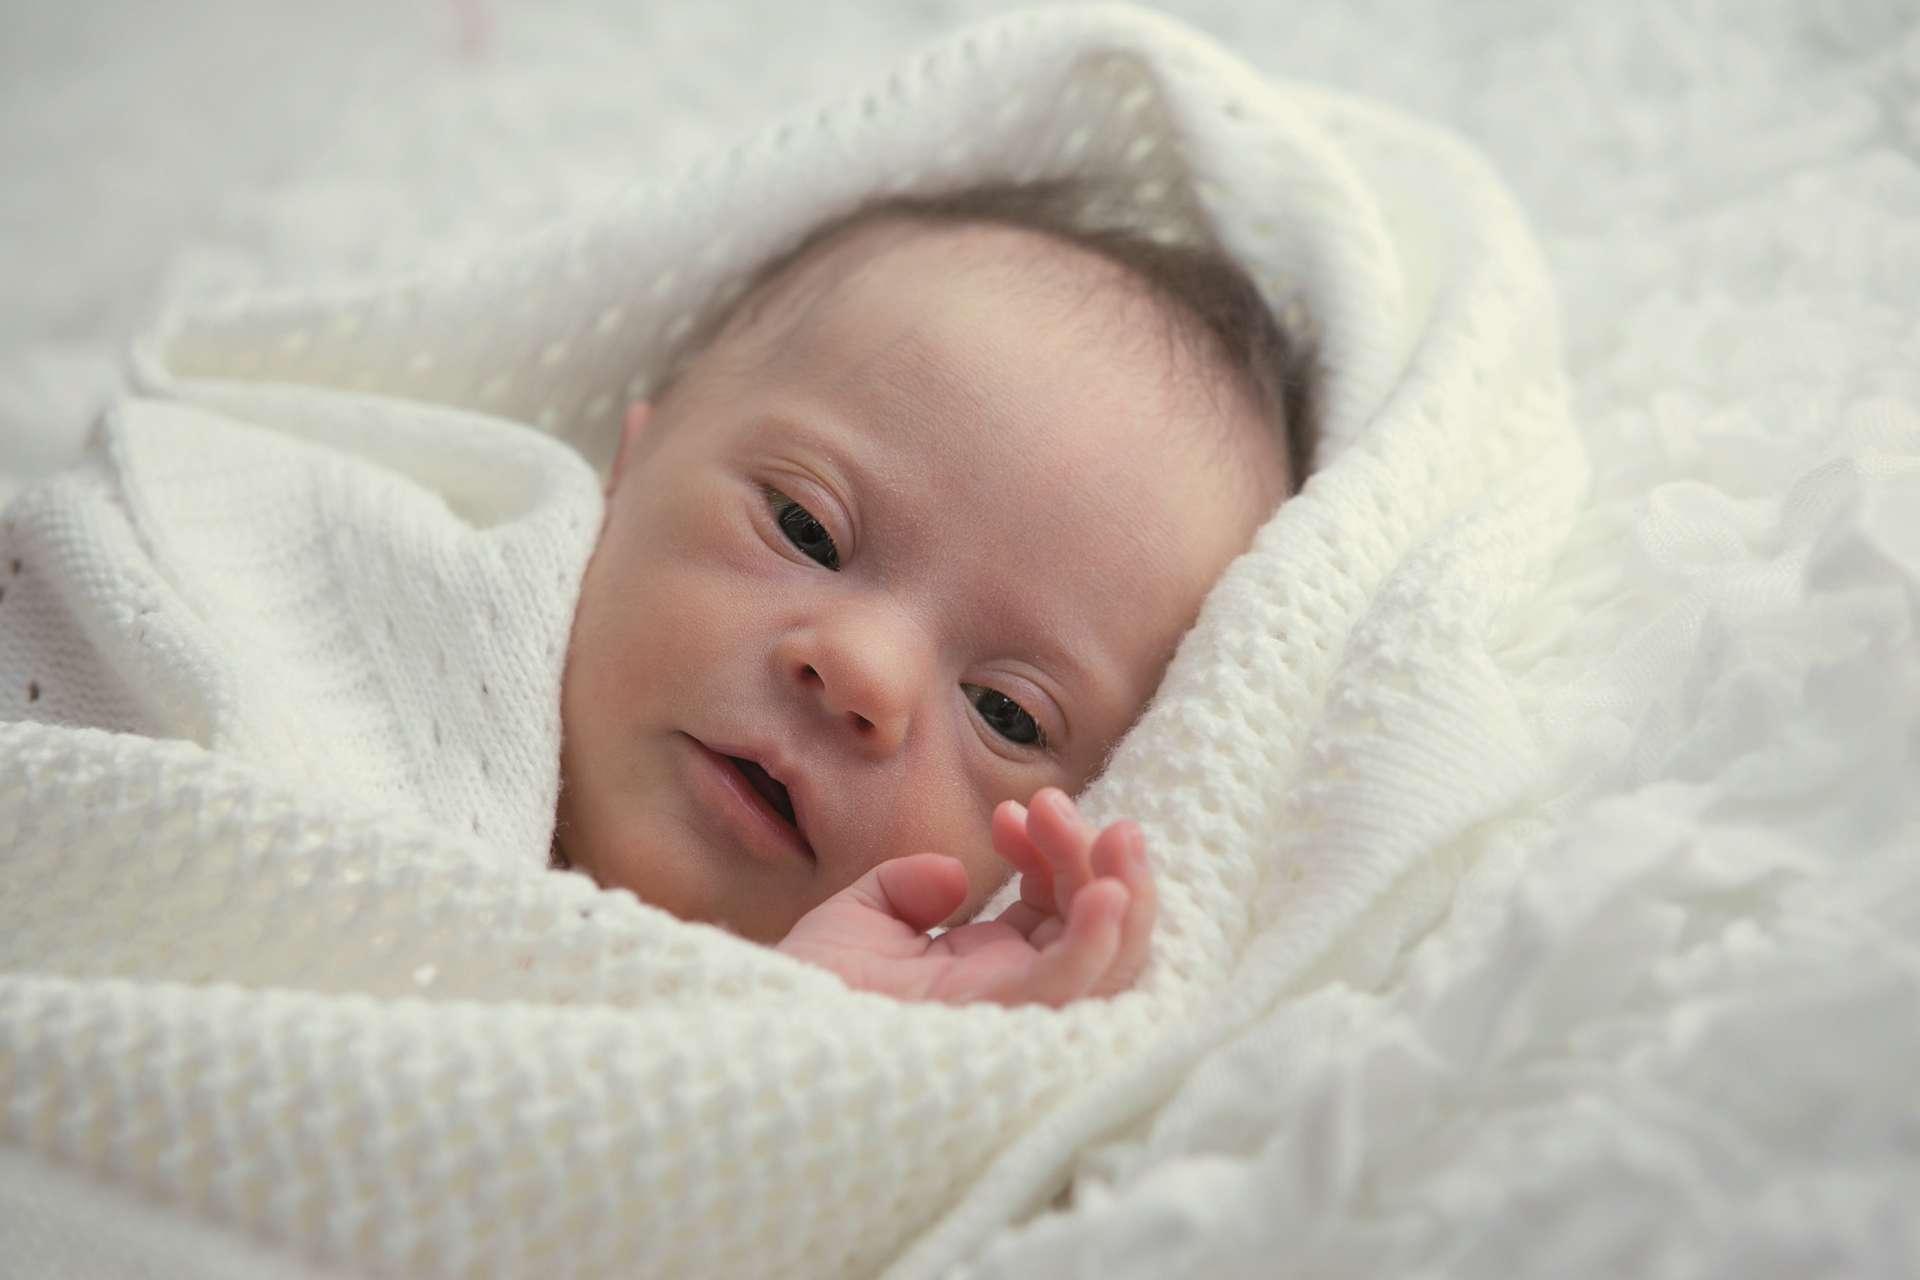 Neugeborene mit Down-Syndrom sind ruhig und sehen aus